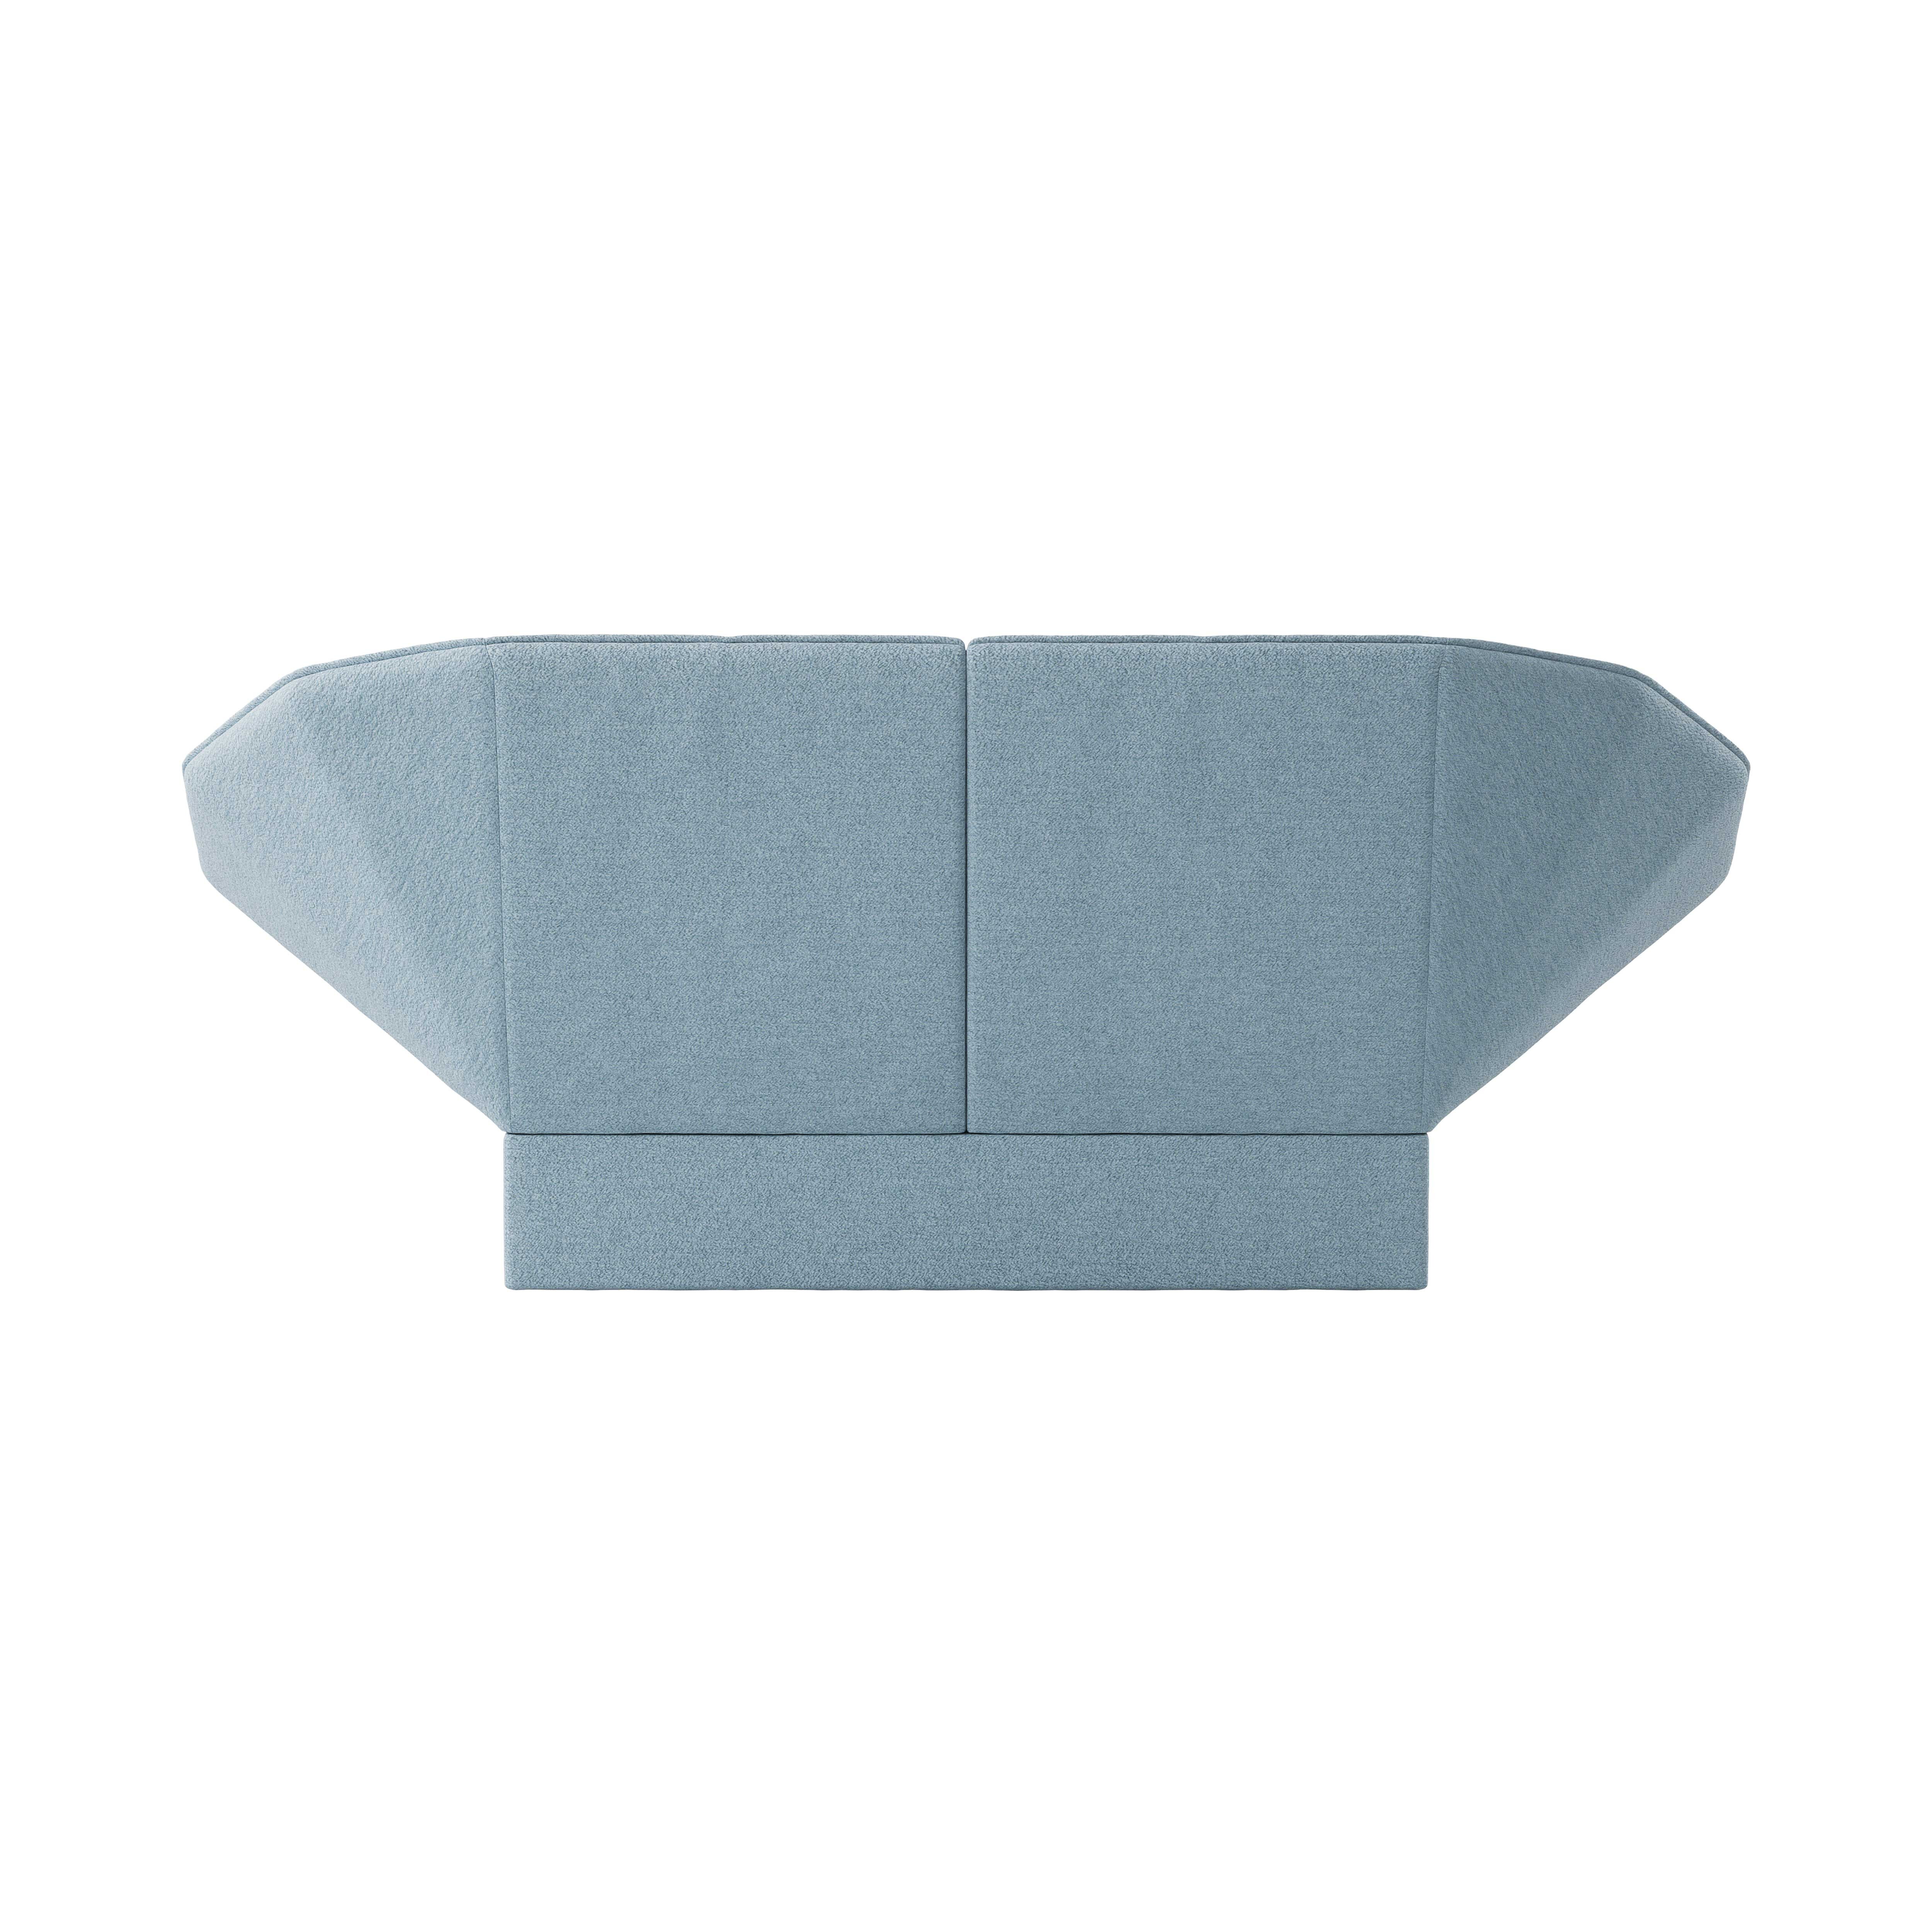 Ori 2- seater sofa product image 2